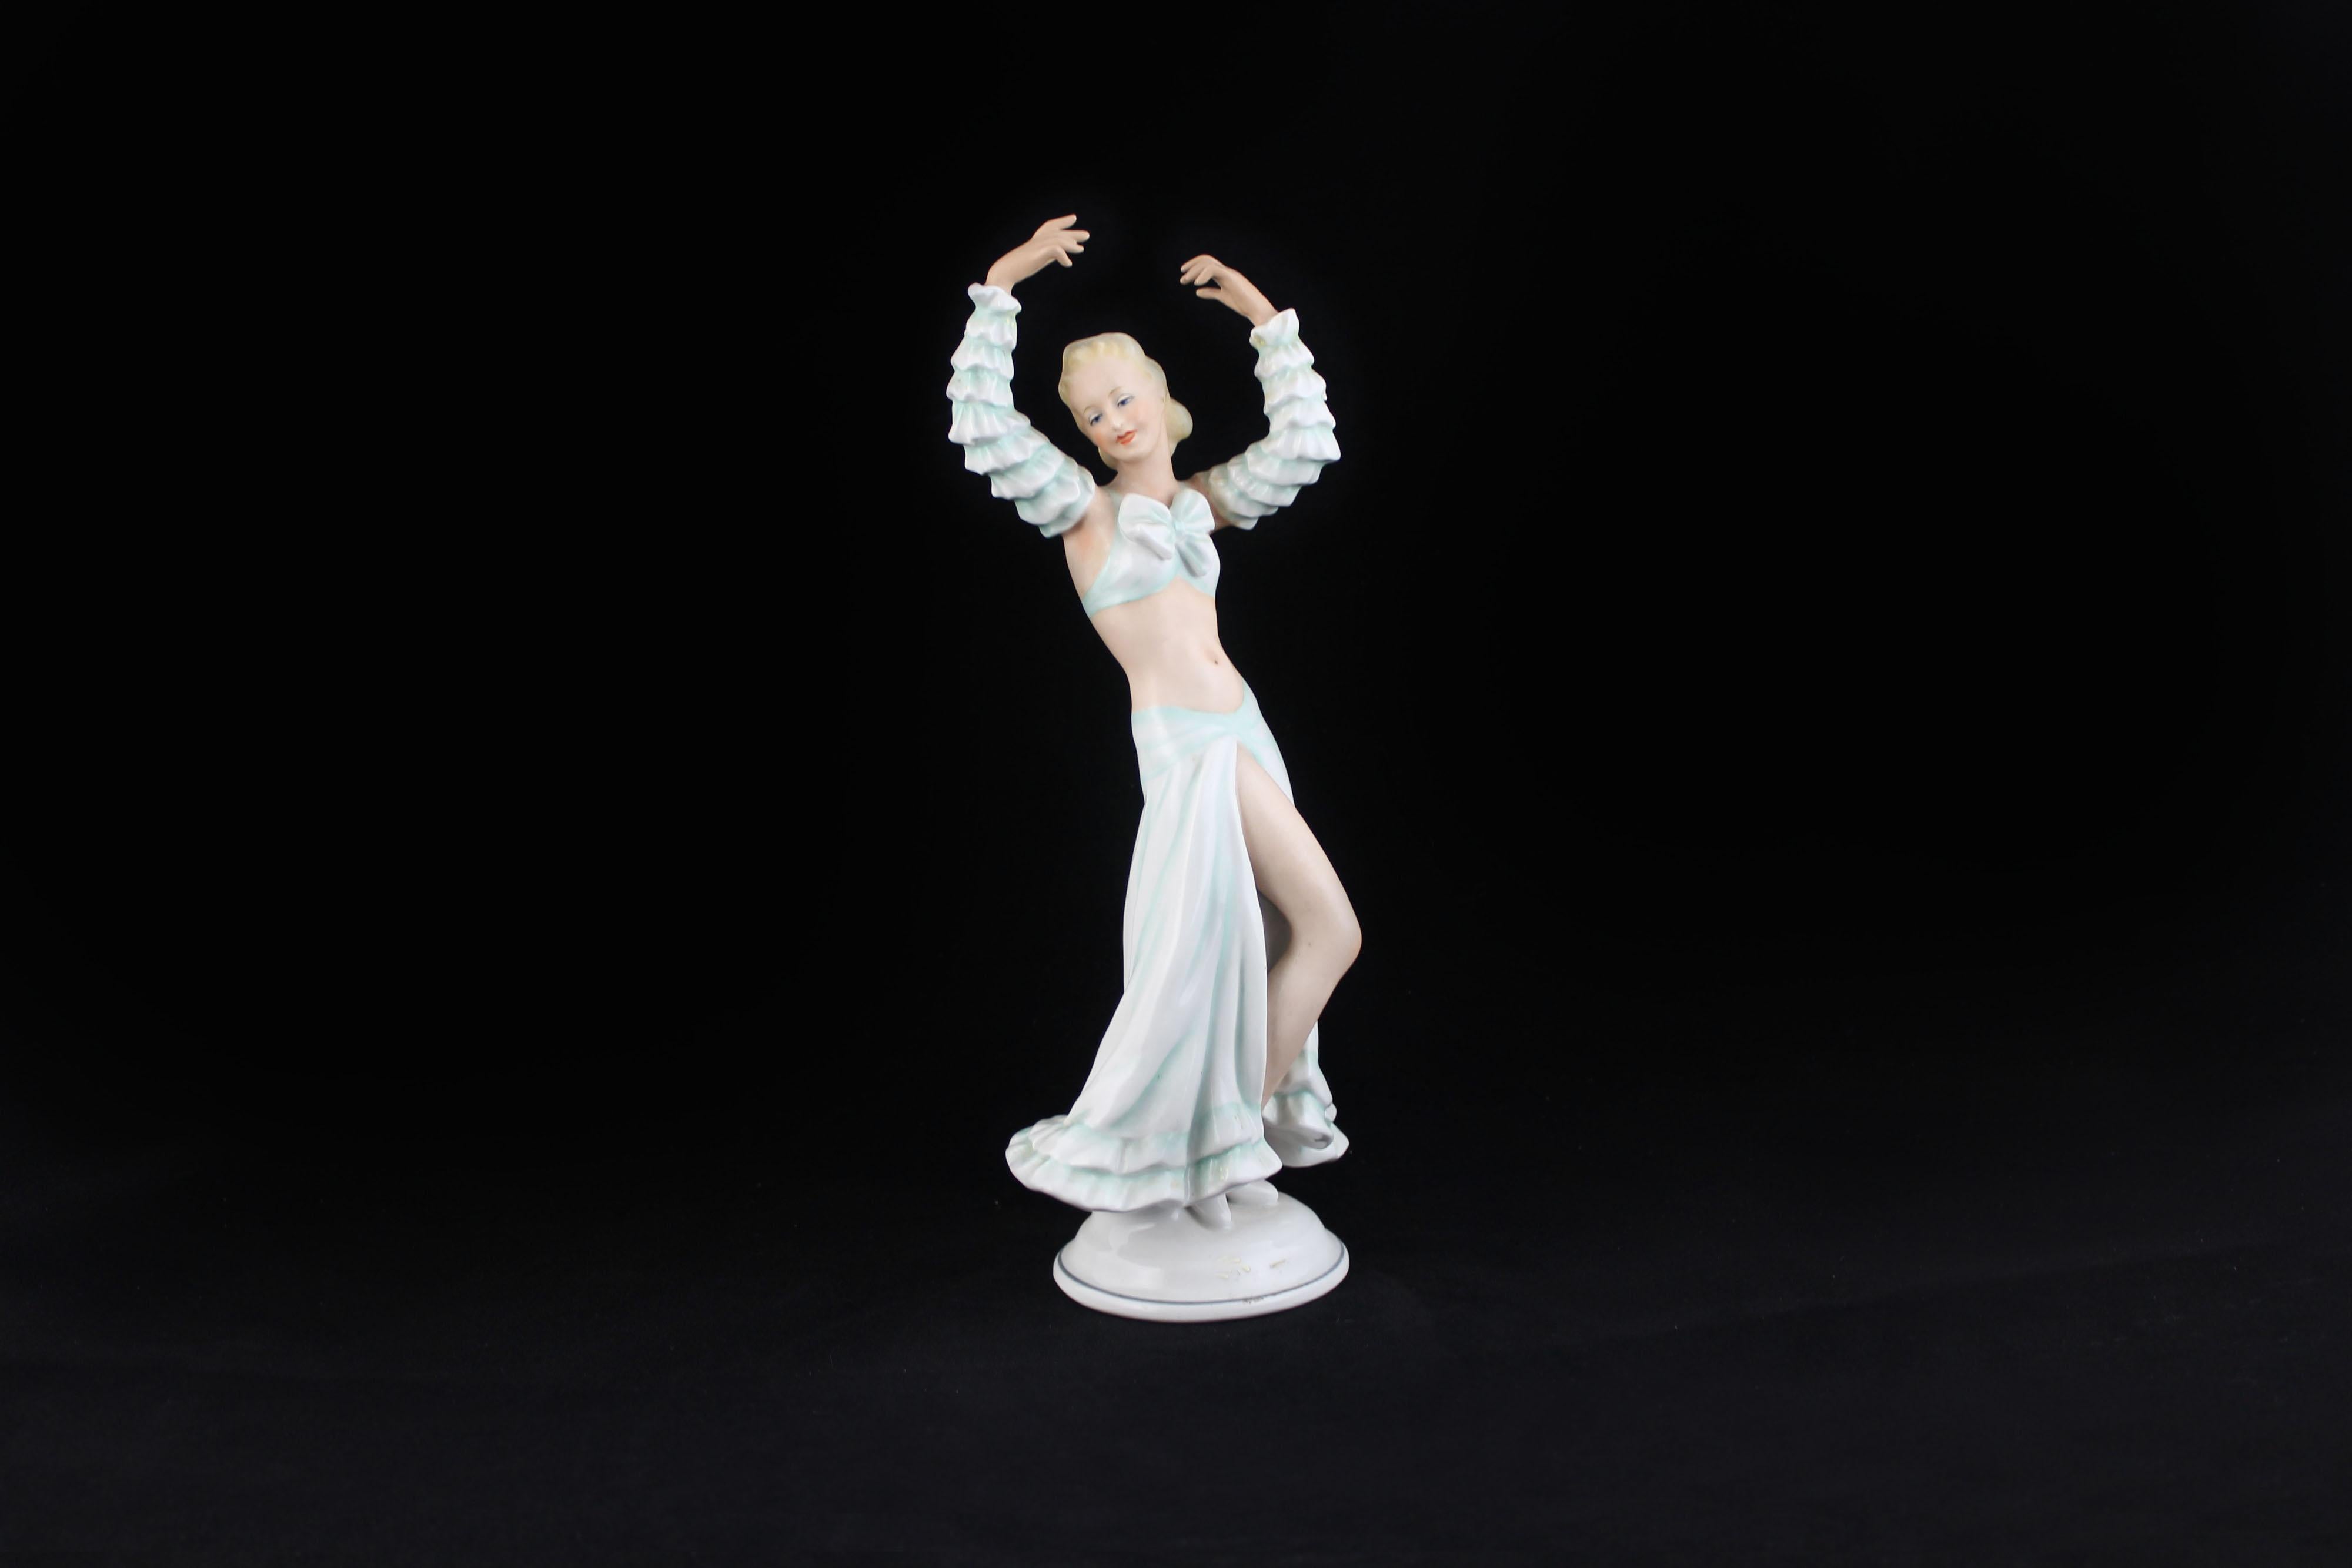 Ballerina im weißen Kleid mit wassergrünen Reflexen von Chaubach Kunst.
